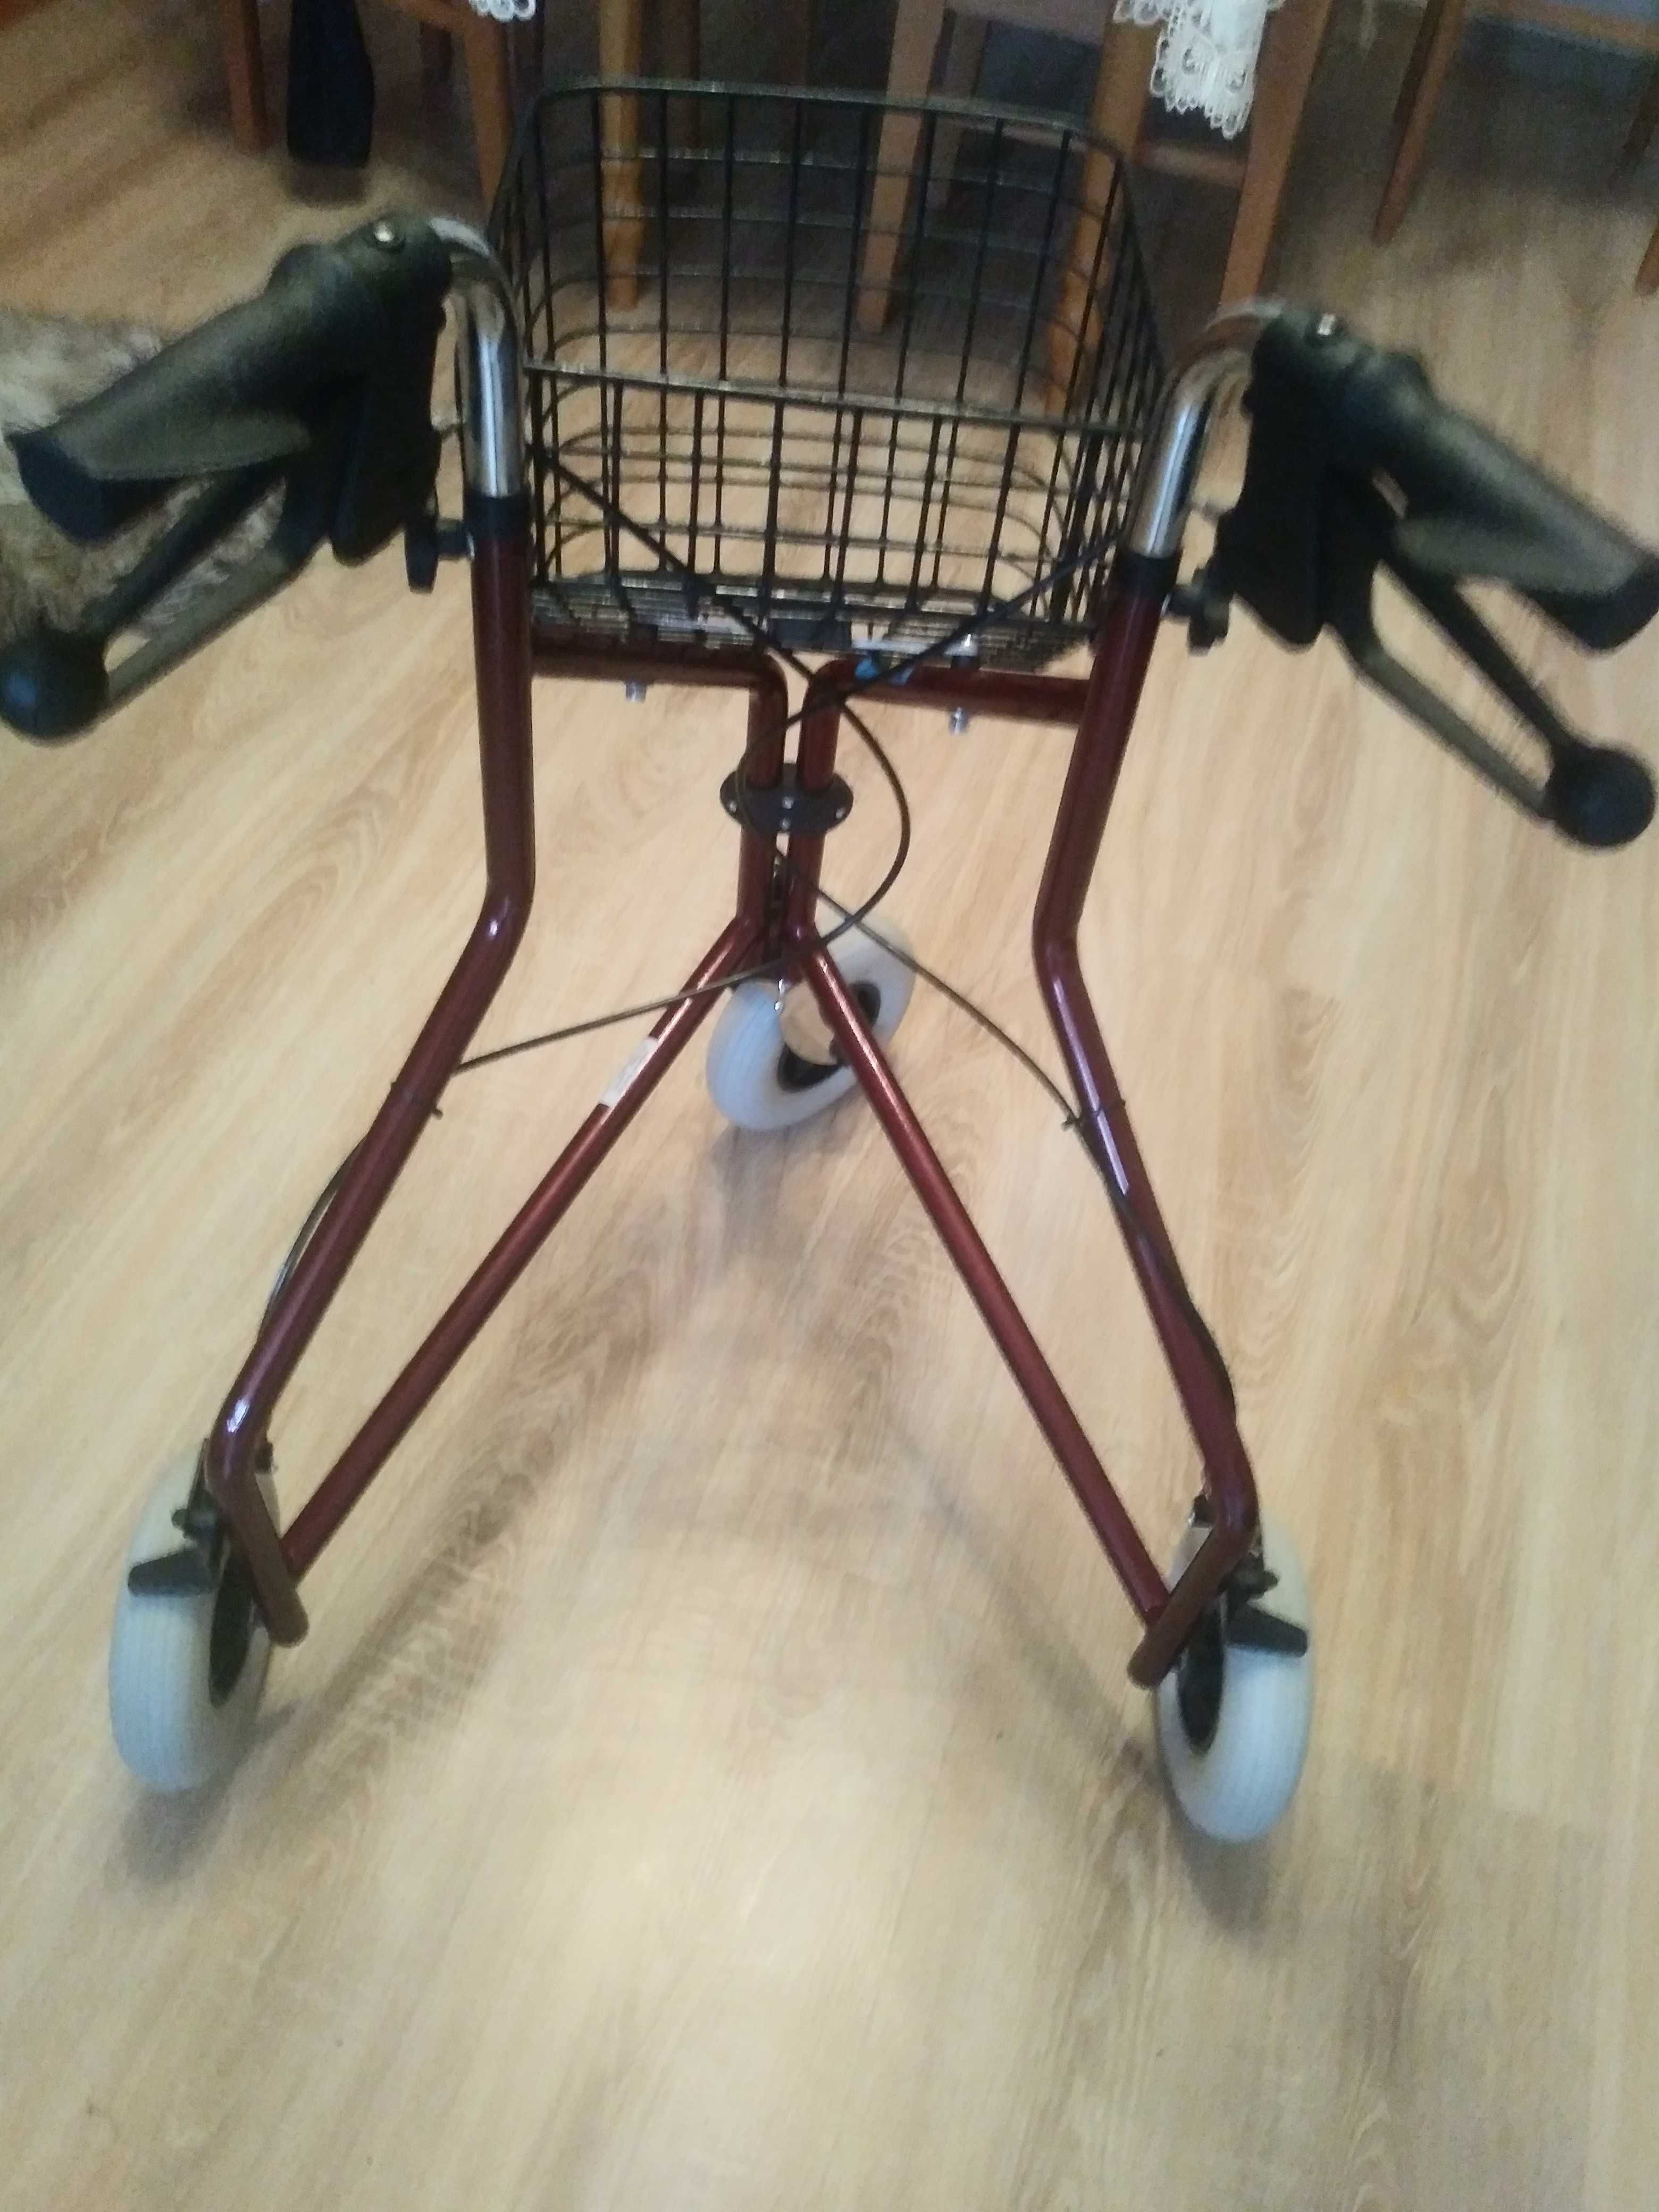 Chodzik Balkonik Wózek dla Seniora 3 kołowy Lekki składany OKAZJA NOWY